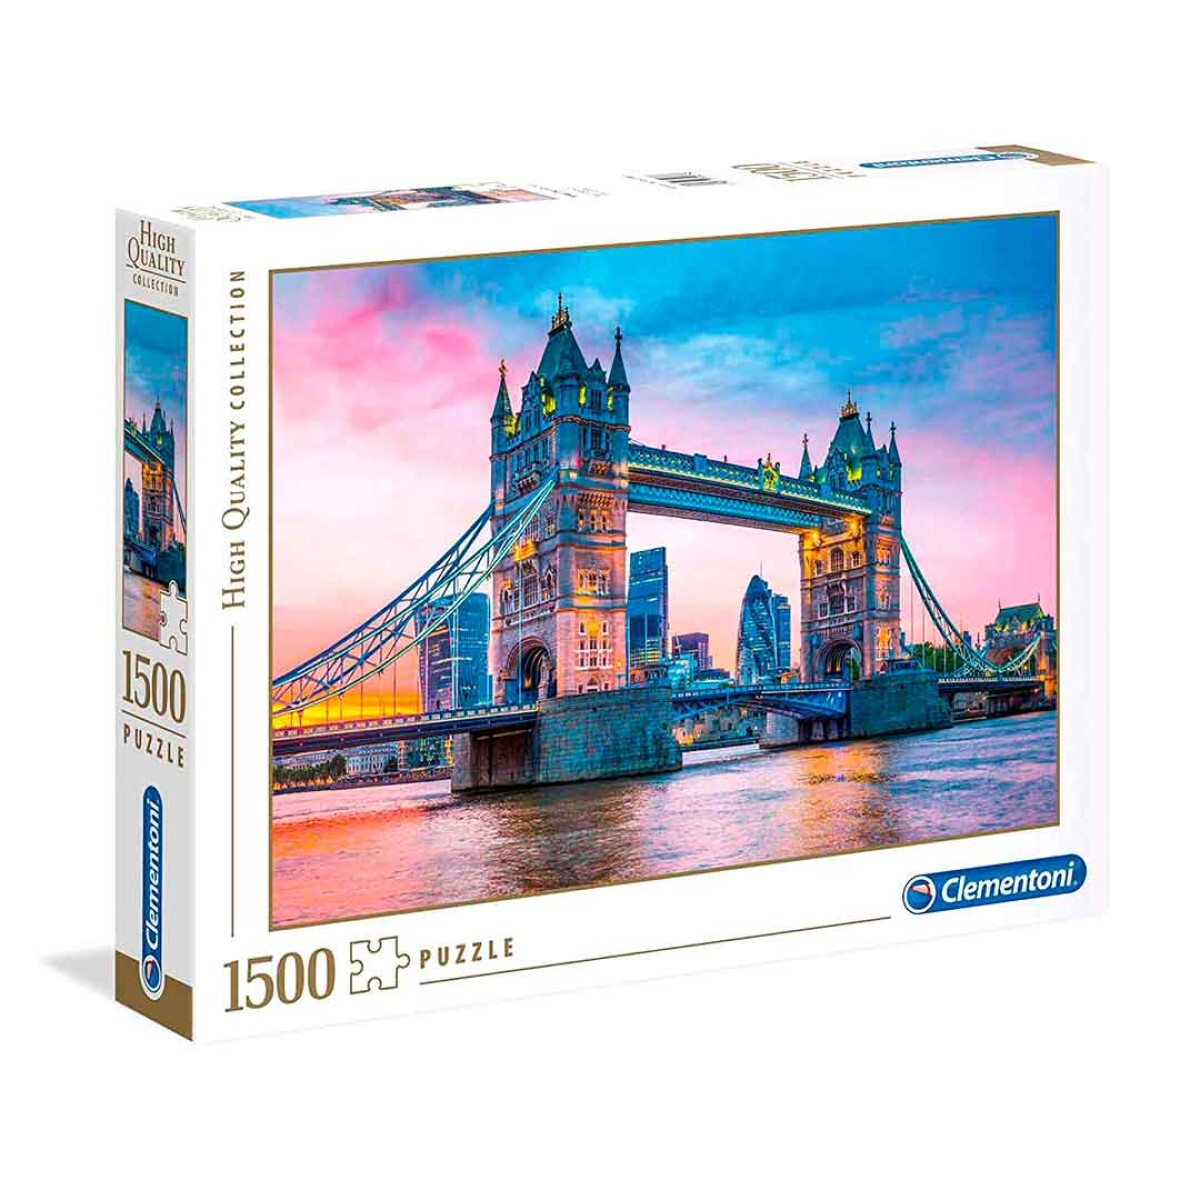 Puzzle Clementoni 1500 piezas London Bridge High Quality - 001 